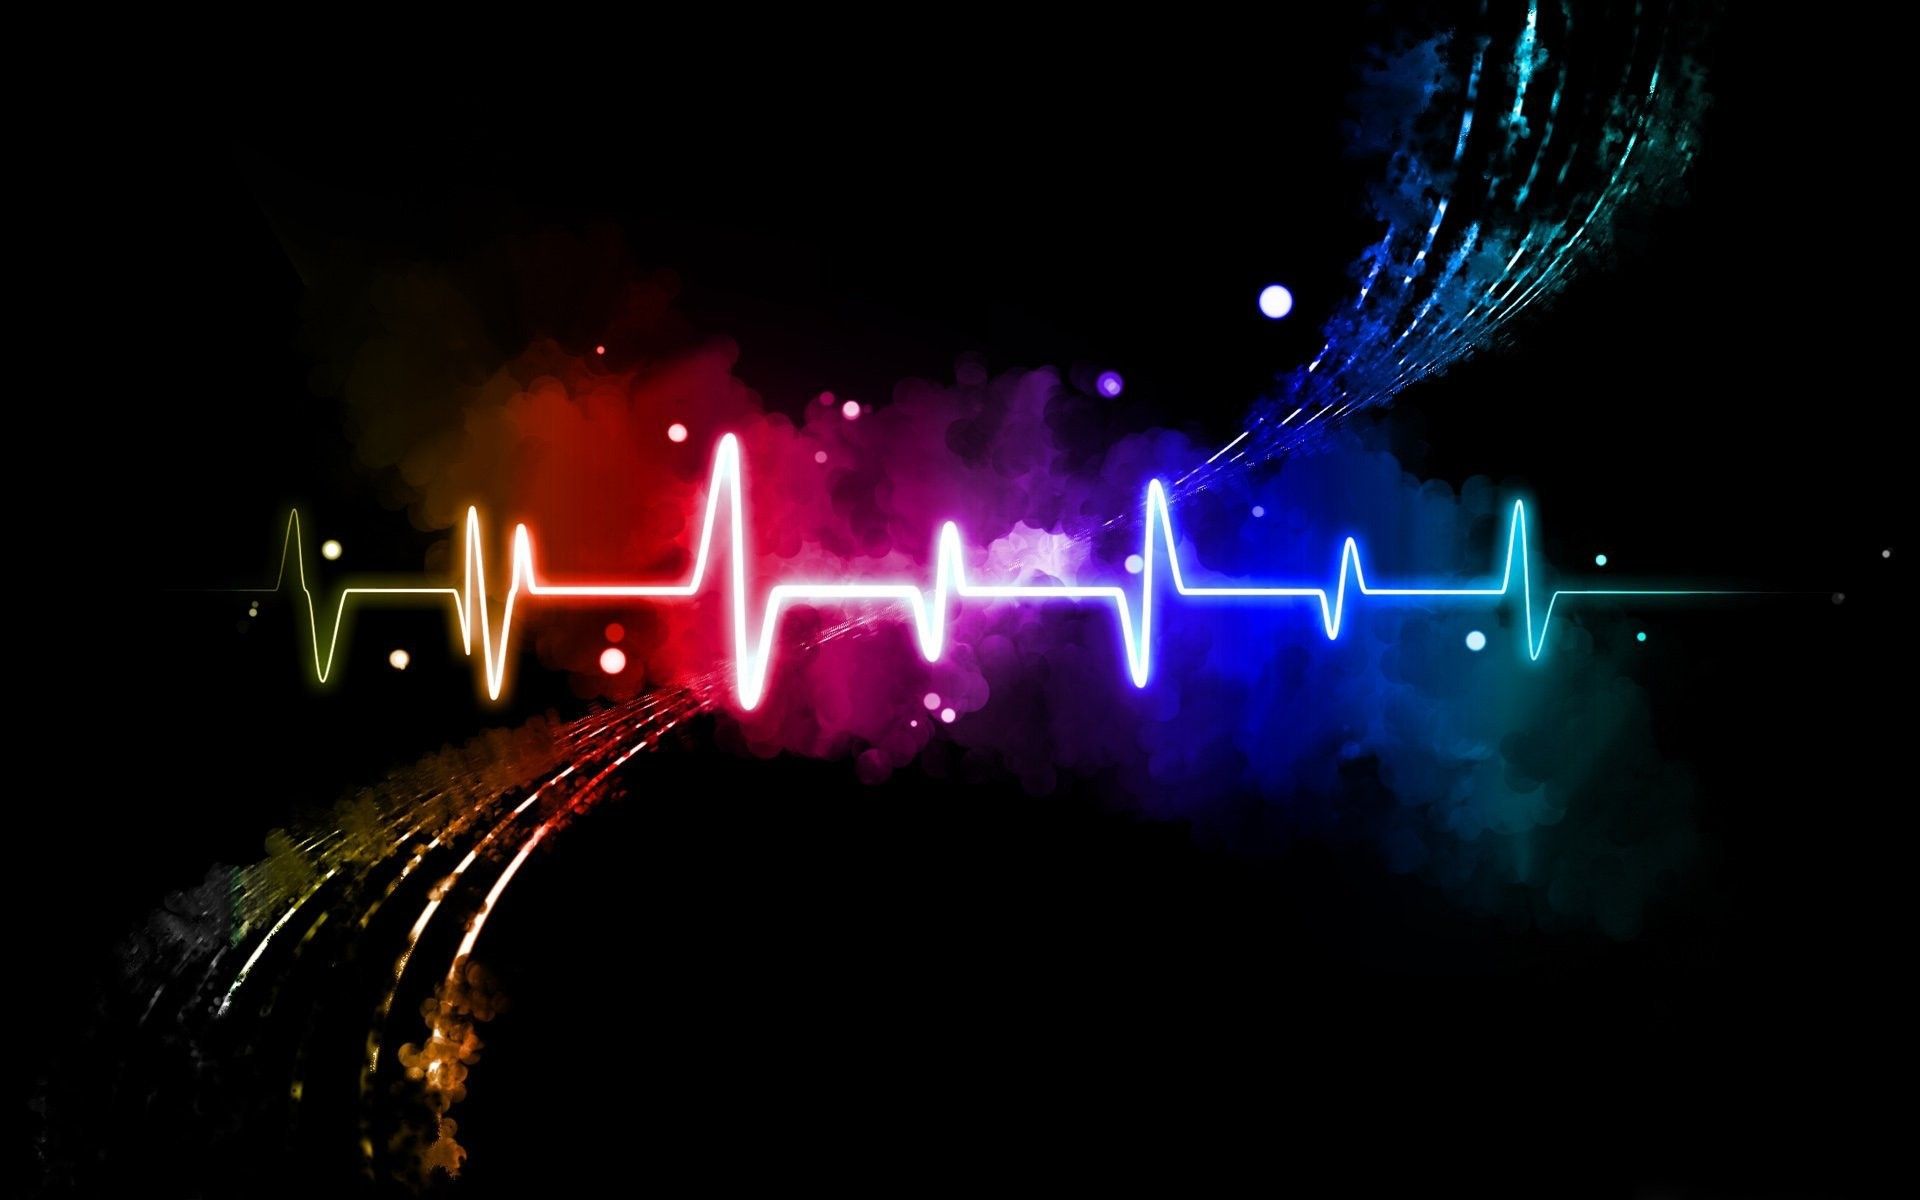 Heartbeat Wallpaper - Heart Beat Wallpaper Iphone , HD Wallpaper & Backgrounds